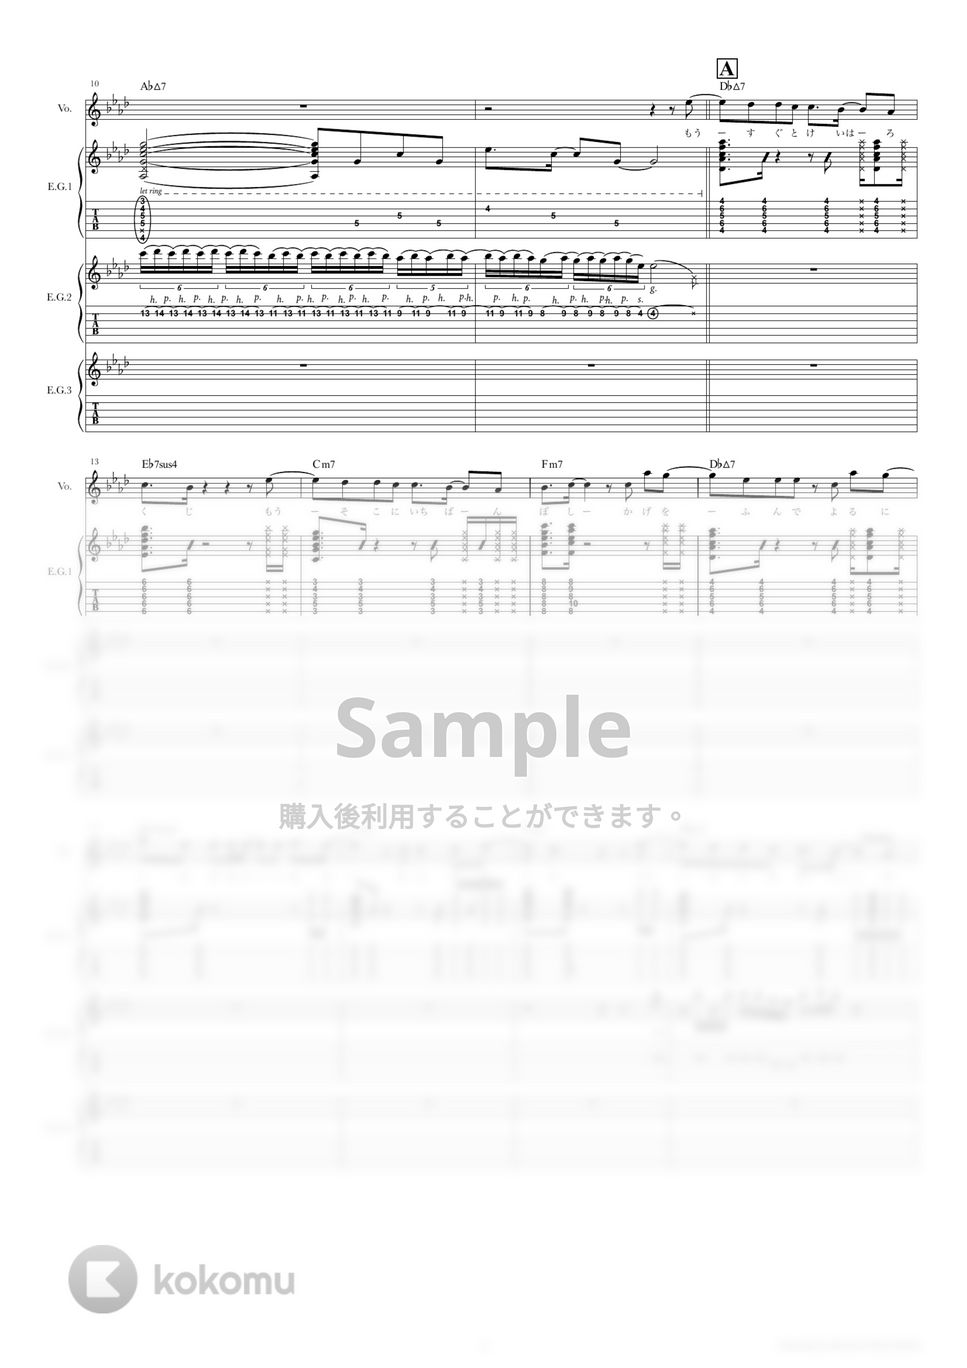 結束バンド - 星座になれたら (ギタースコア・歌詞・コード付き) by TRIAD GUITAR SCHOOL